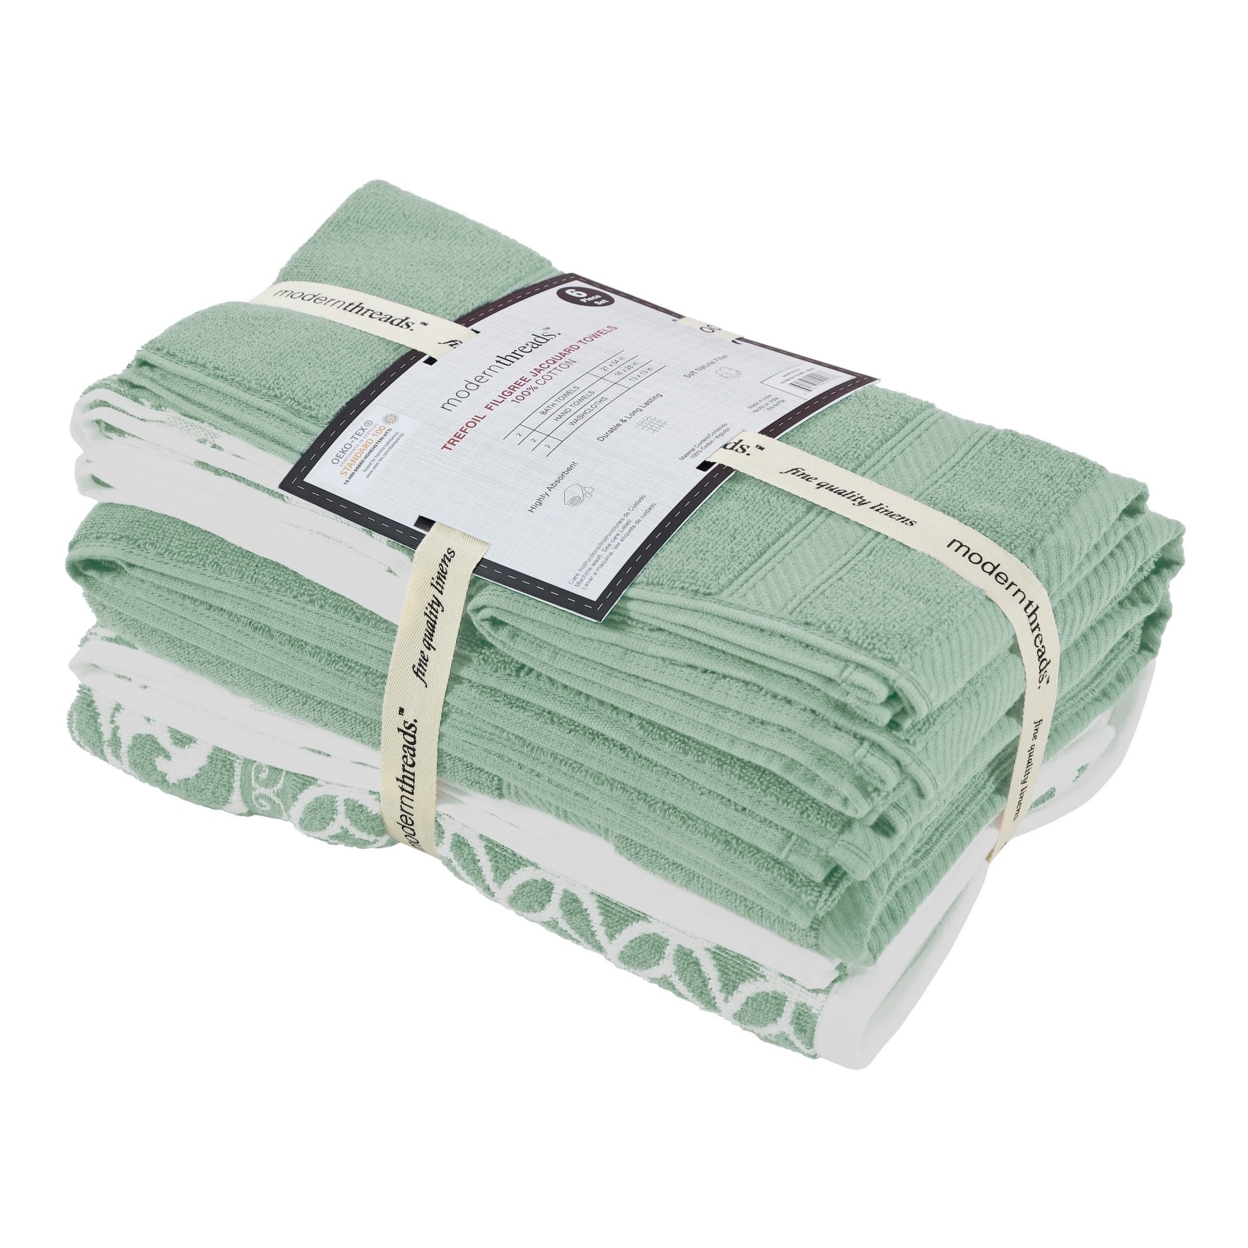 Bev Modern 6 Piece Cotton Towel Set, Jacquard Filigree Pattern, Sage Green- Saltoro Sherpi